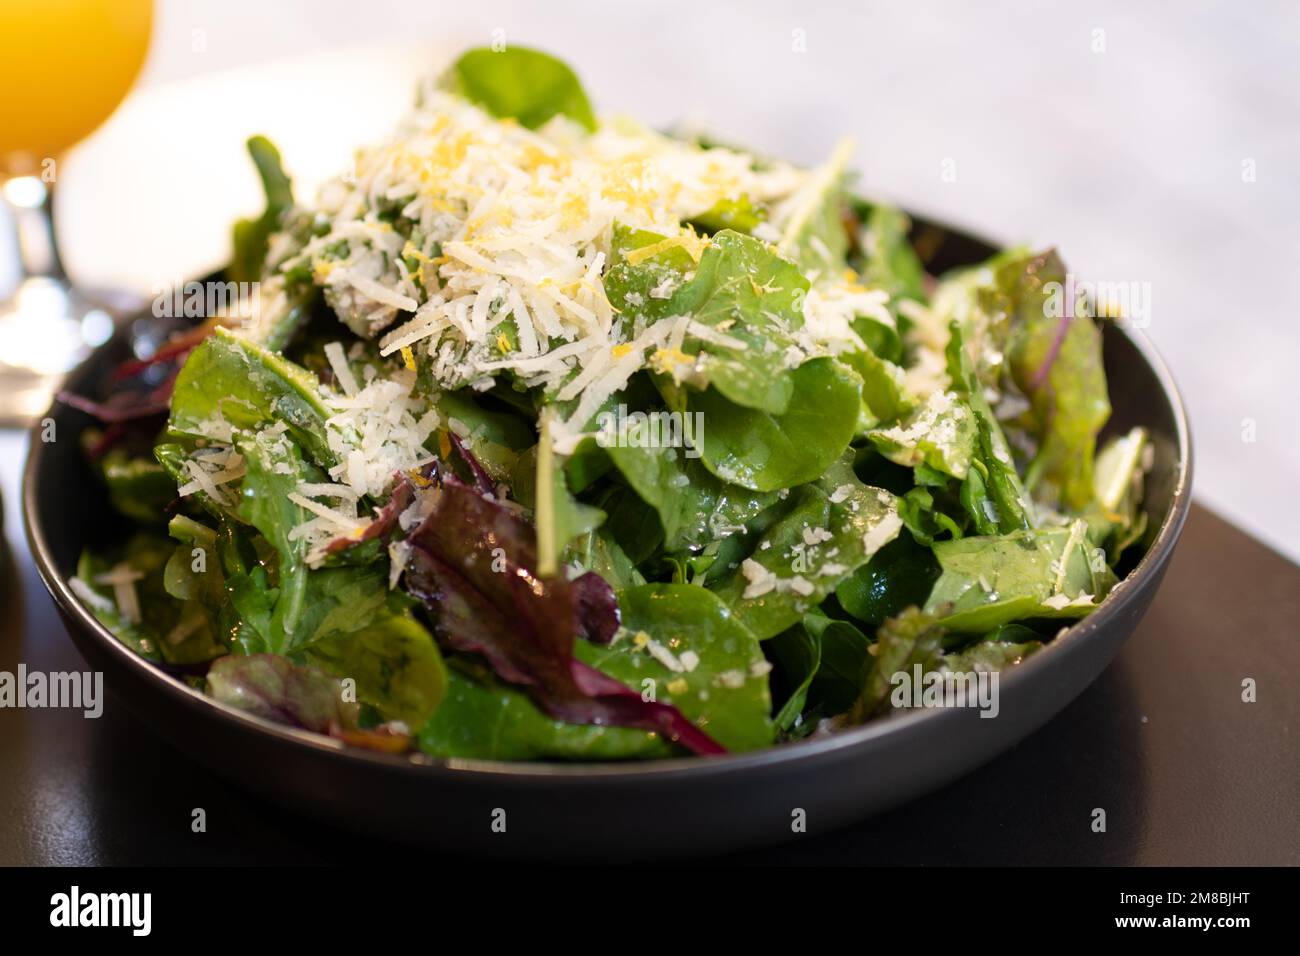 Salade verte fraîche recouverte de parmesan râpé et de zeste de citron râpé Banque D'Images